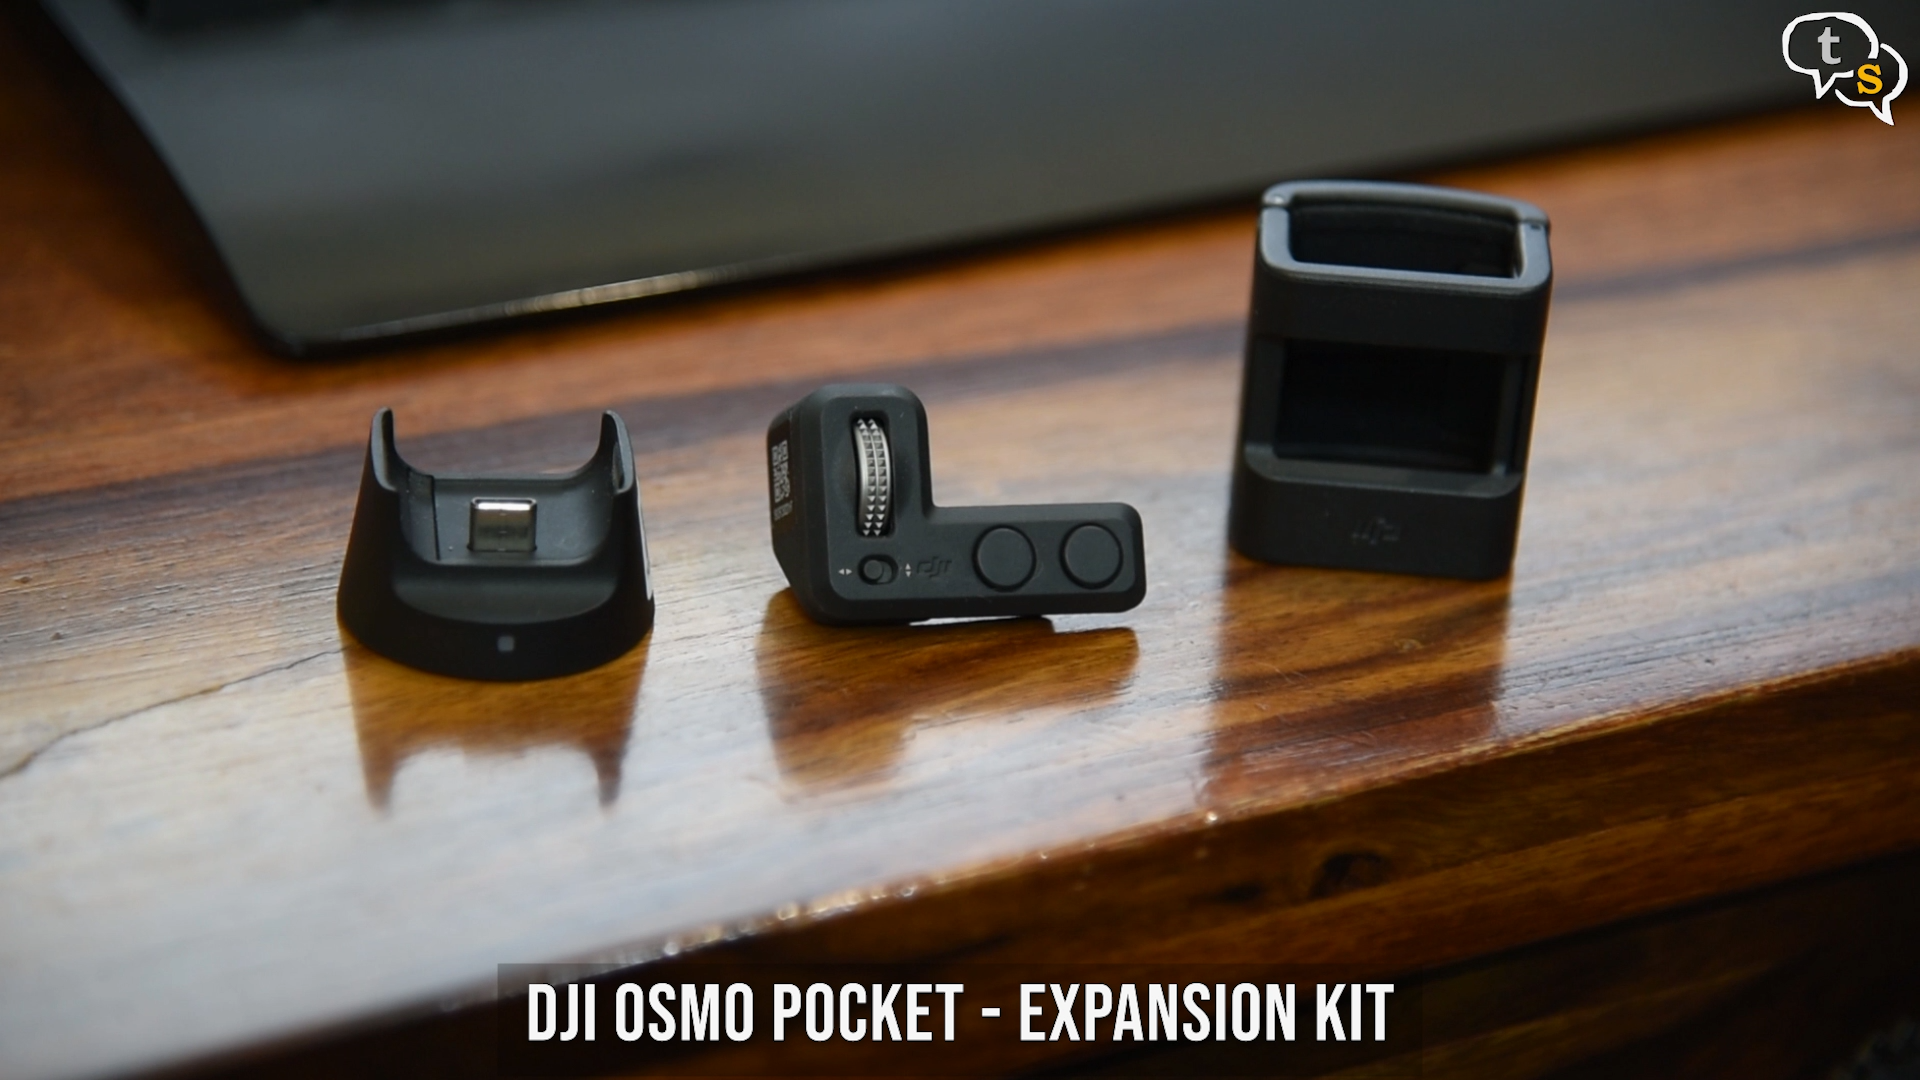 DJI Osmo Pocket expansion kit